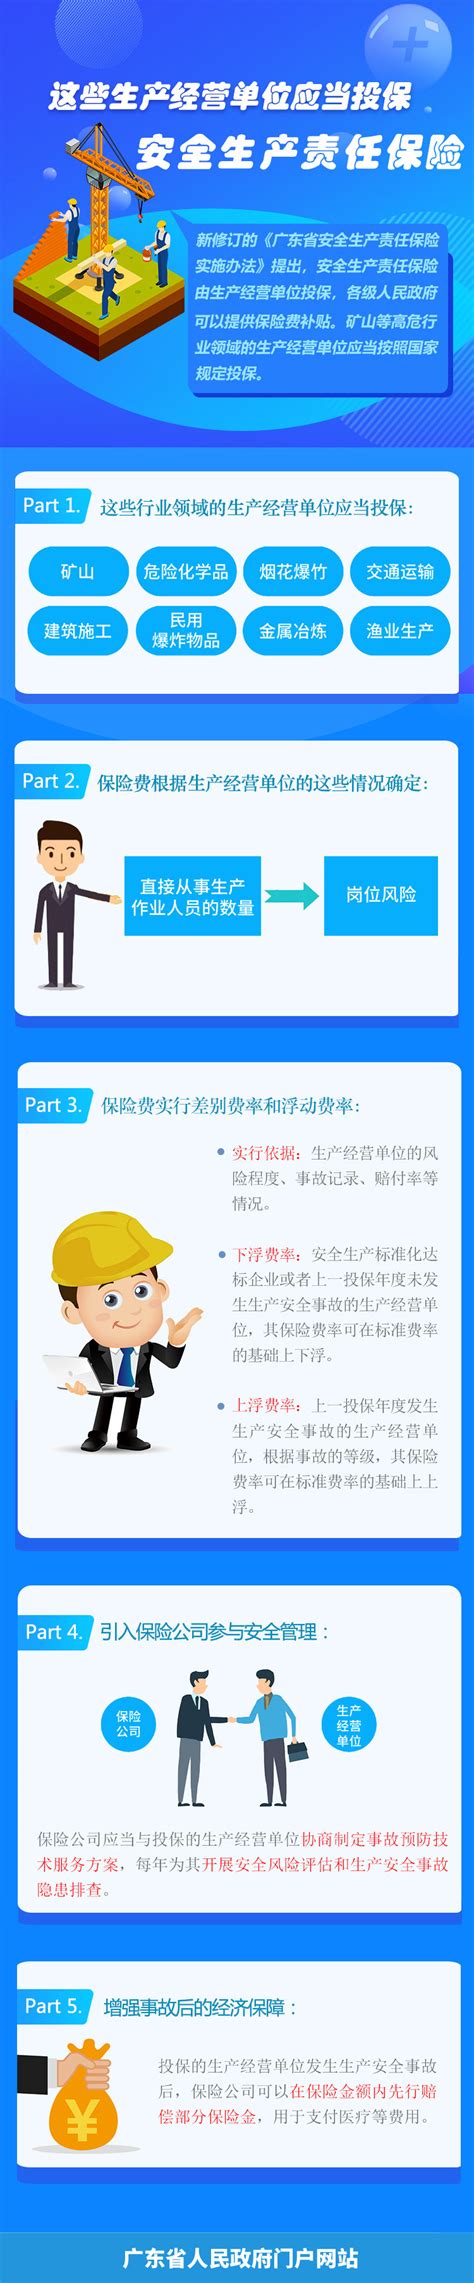 广东省安全生产责任保险实施方法